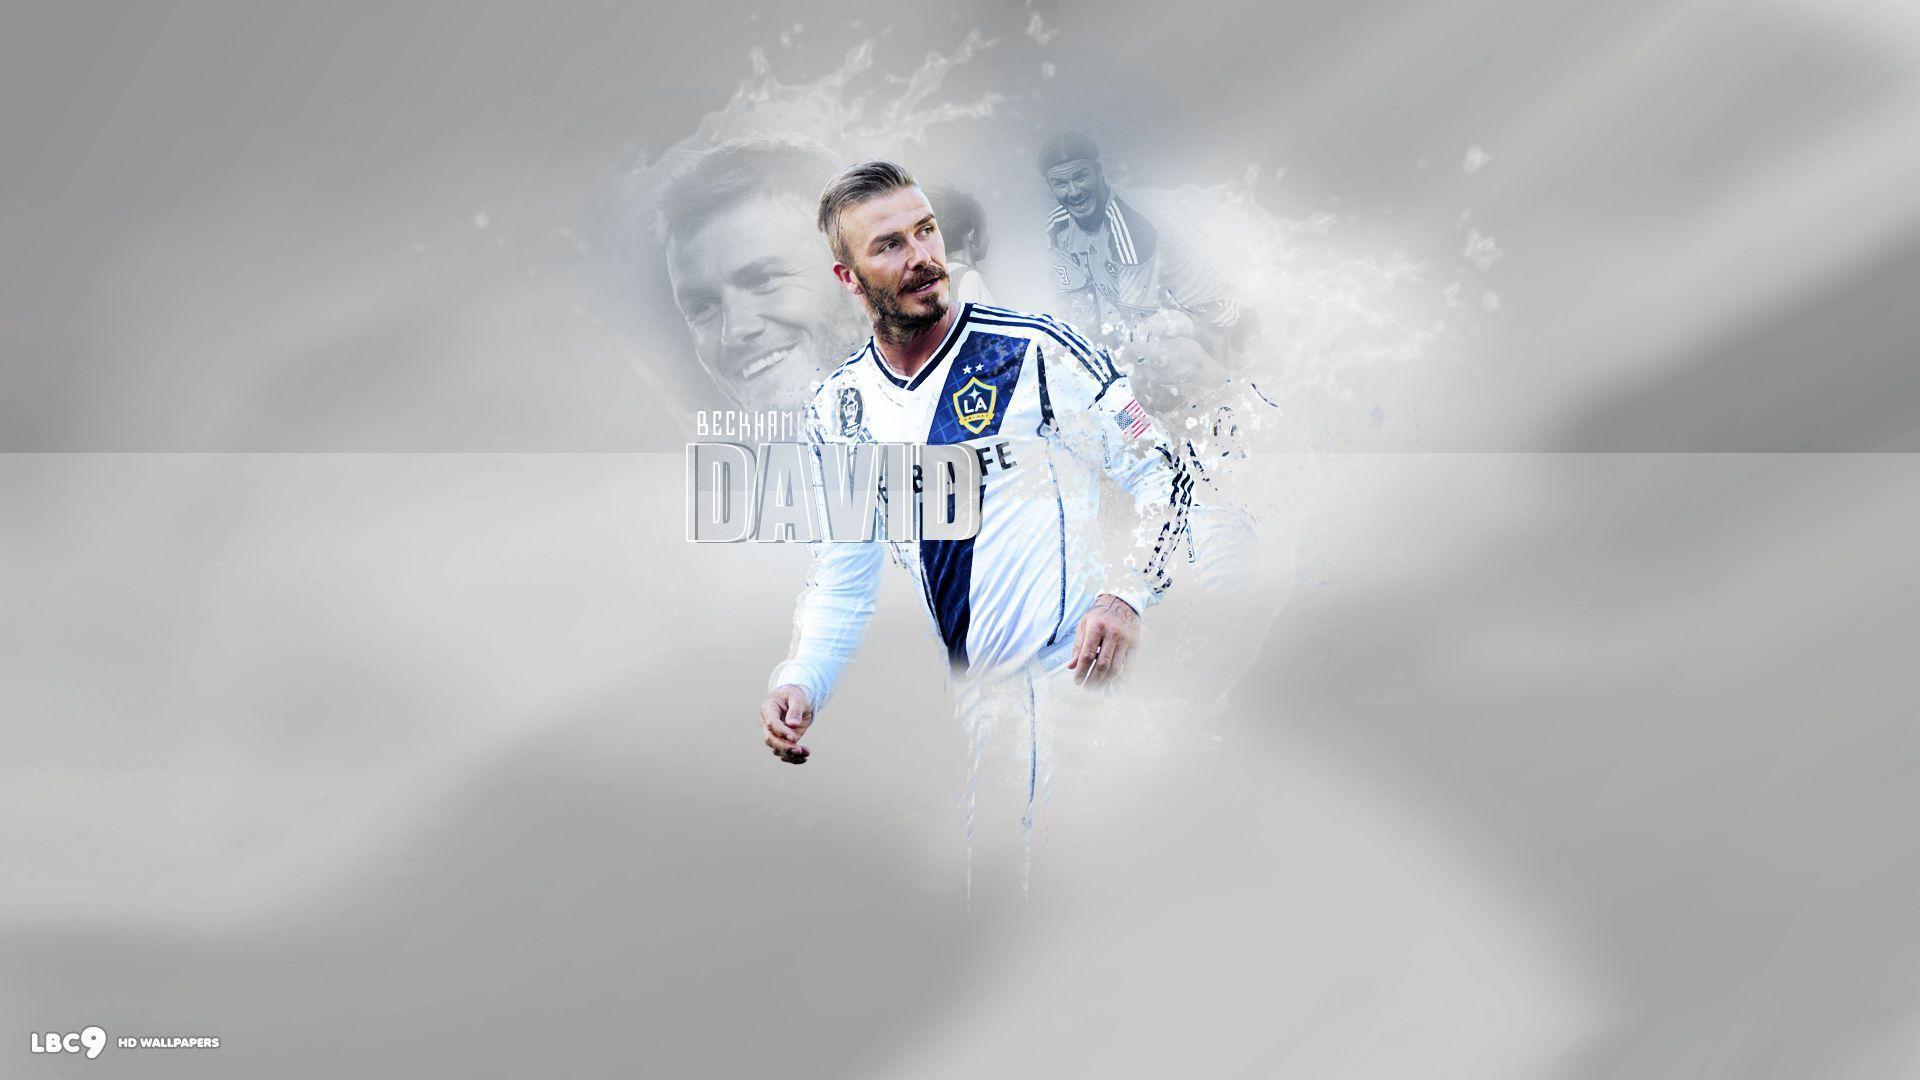 David Beckham Wallpaper 4 11. Players HD Background